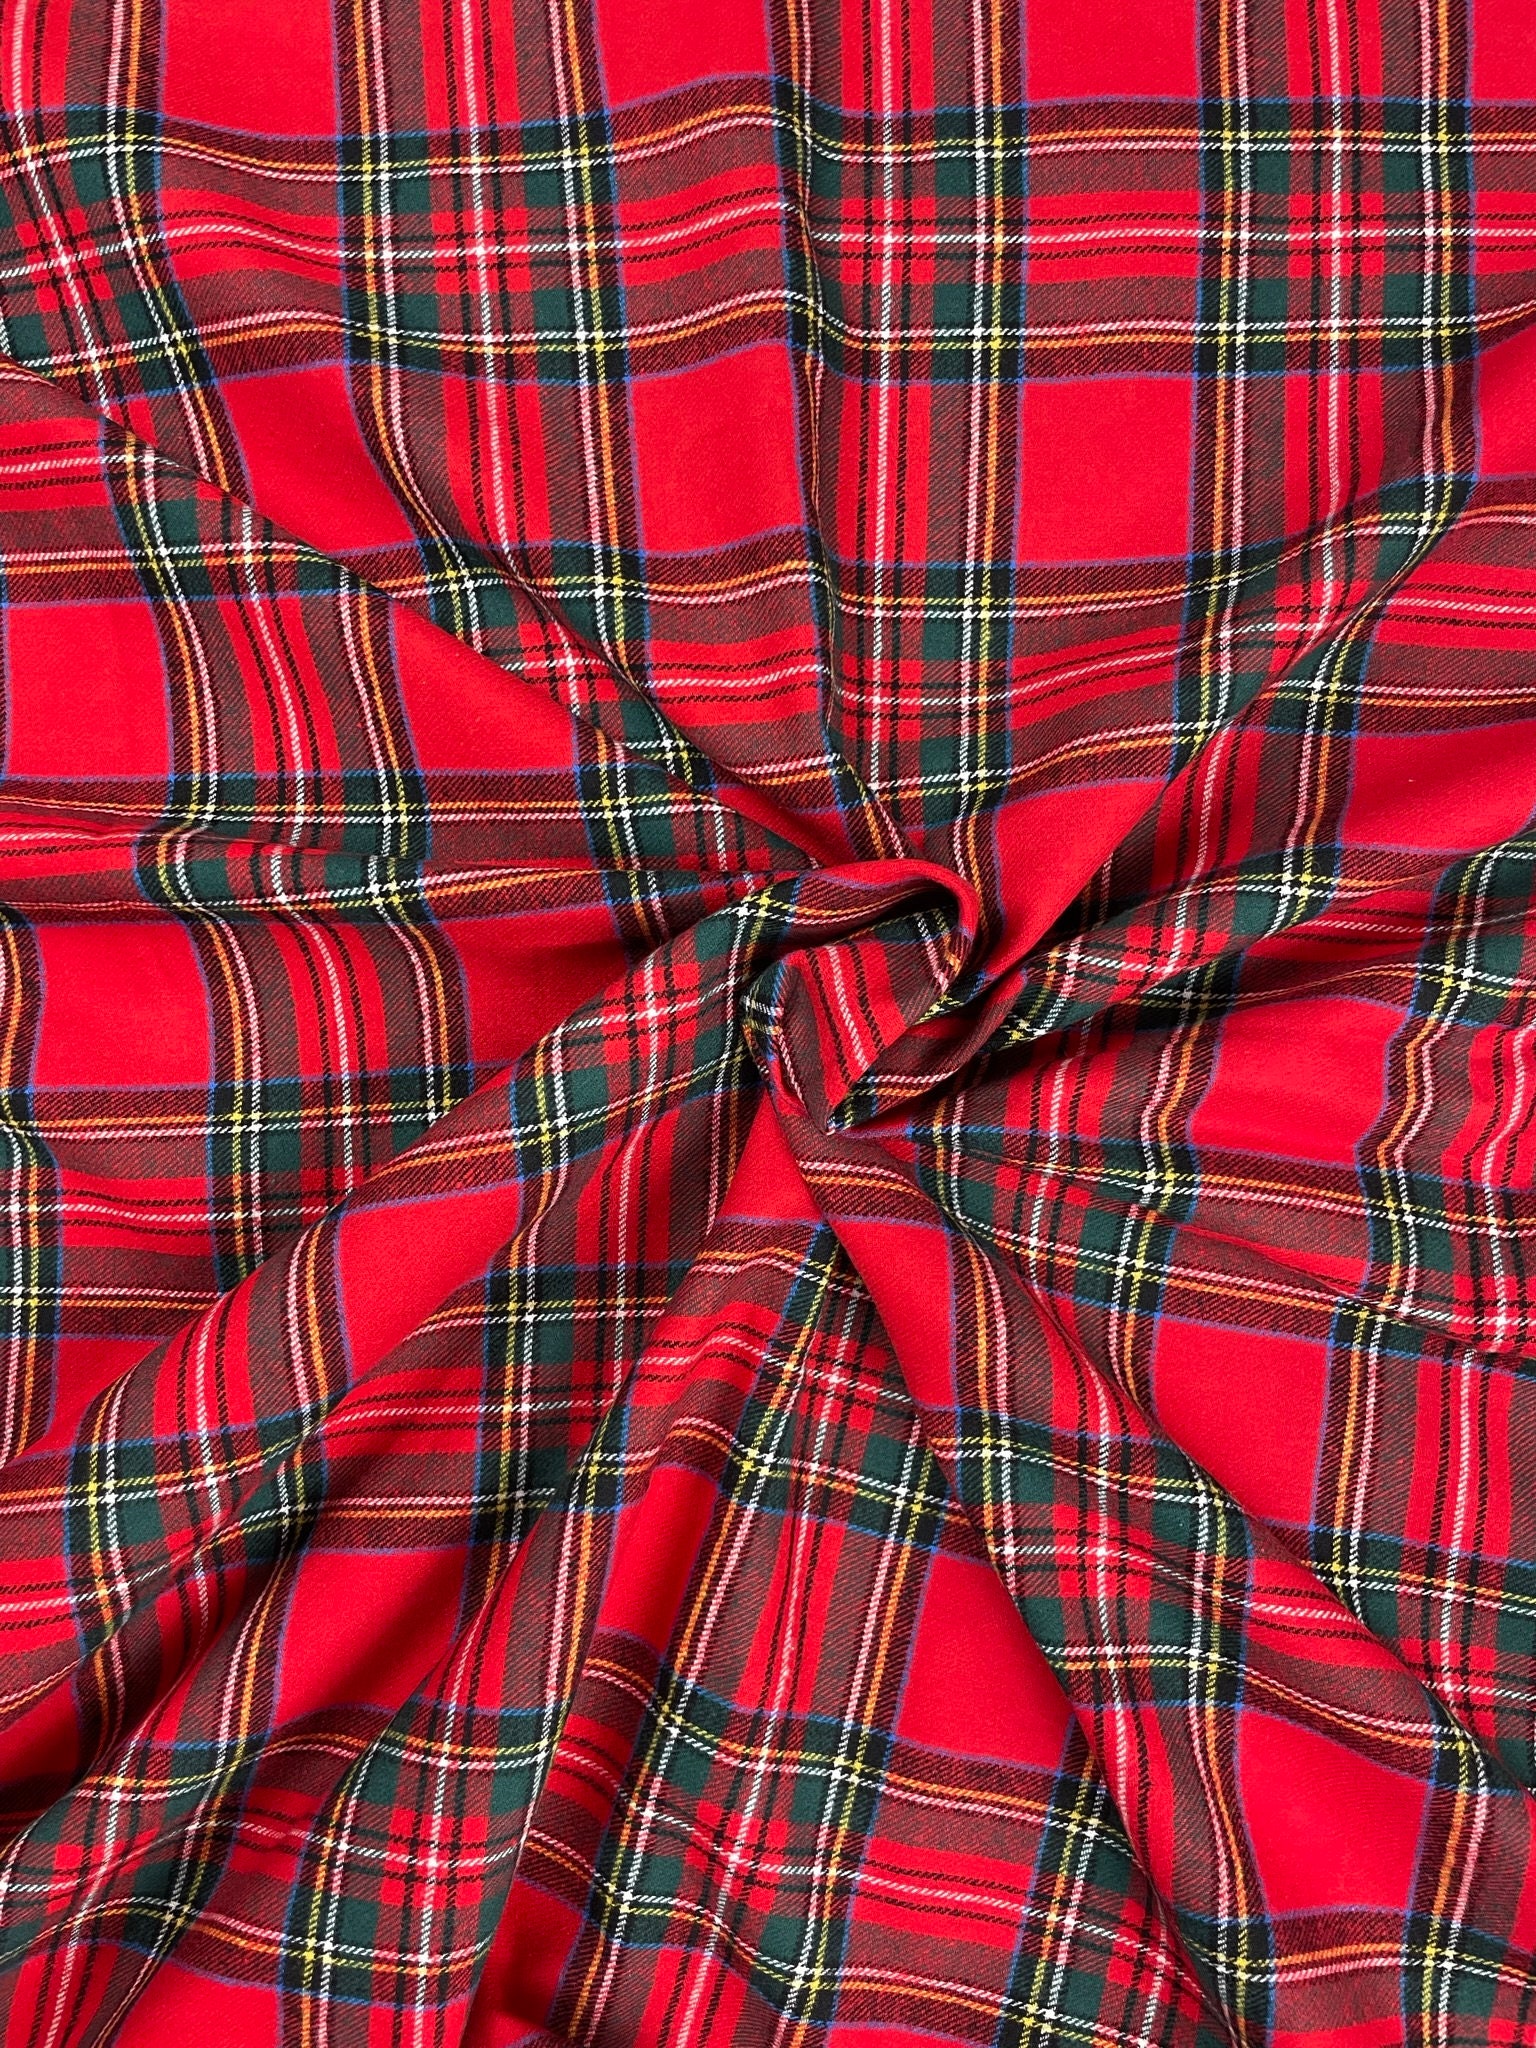 Red Tartan Fabric 